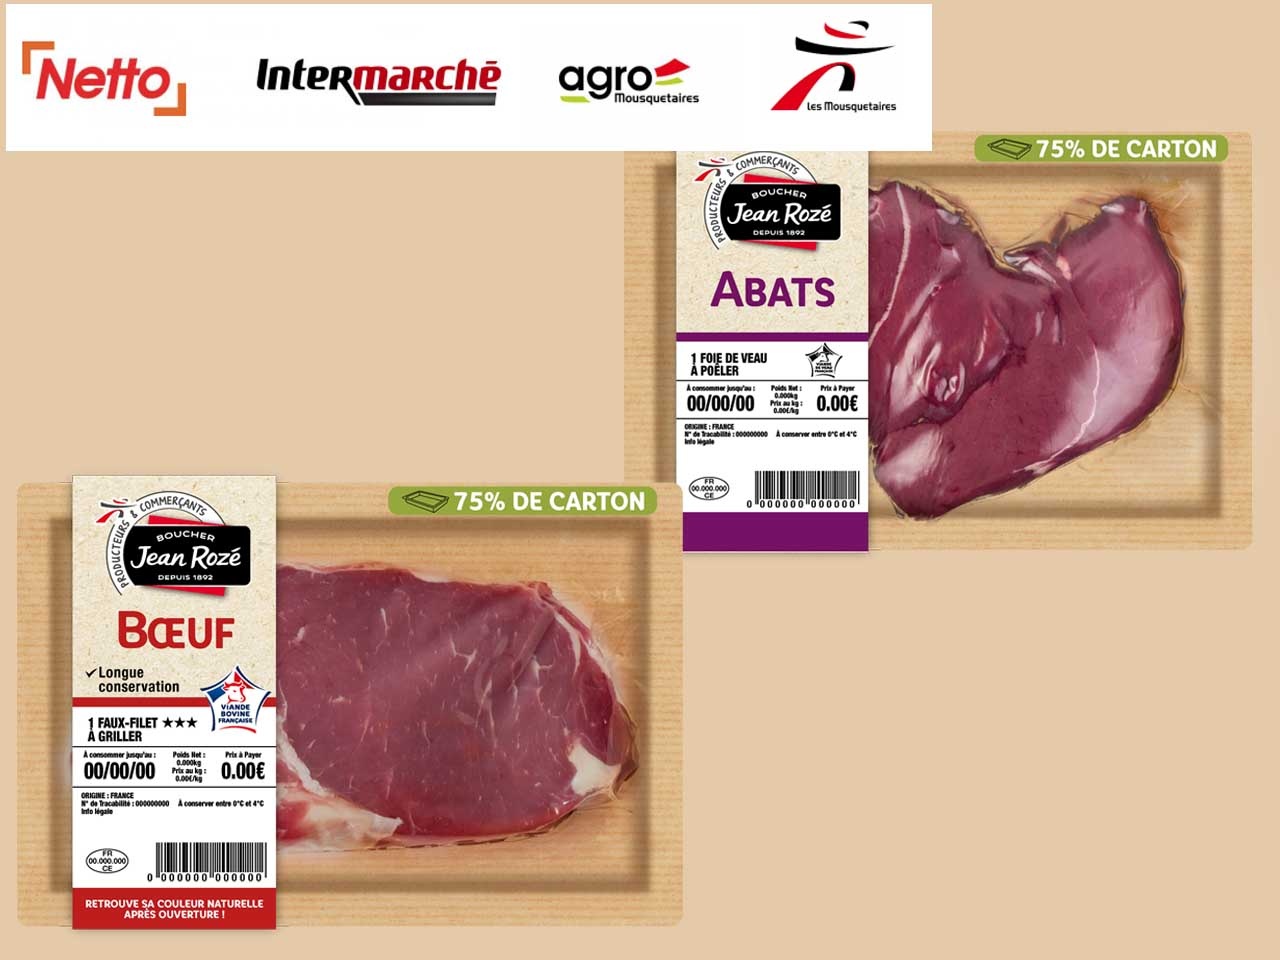 Les enseignes alimentaires du Groupement Les Mousquetaires ainsi qu’Agromousquetaires lancent un nouvel emballage responsable pour 31 références de viande